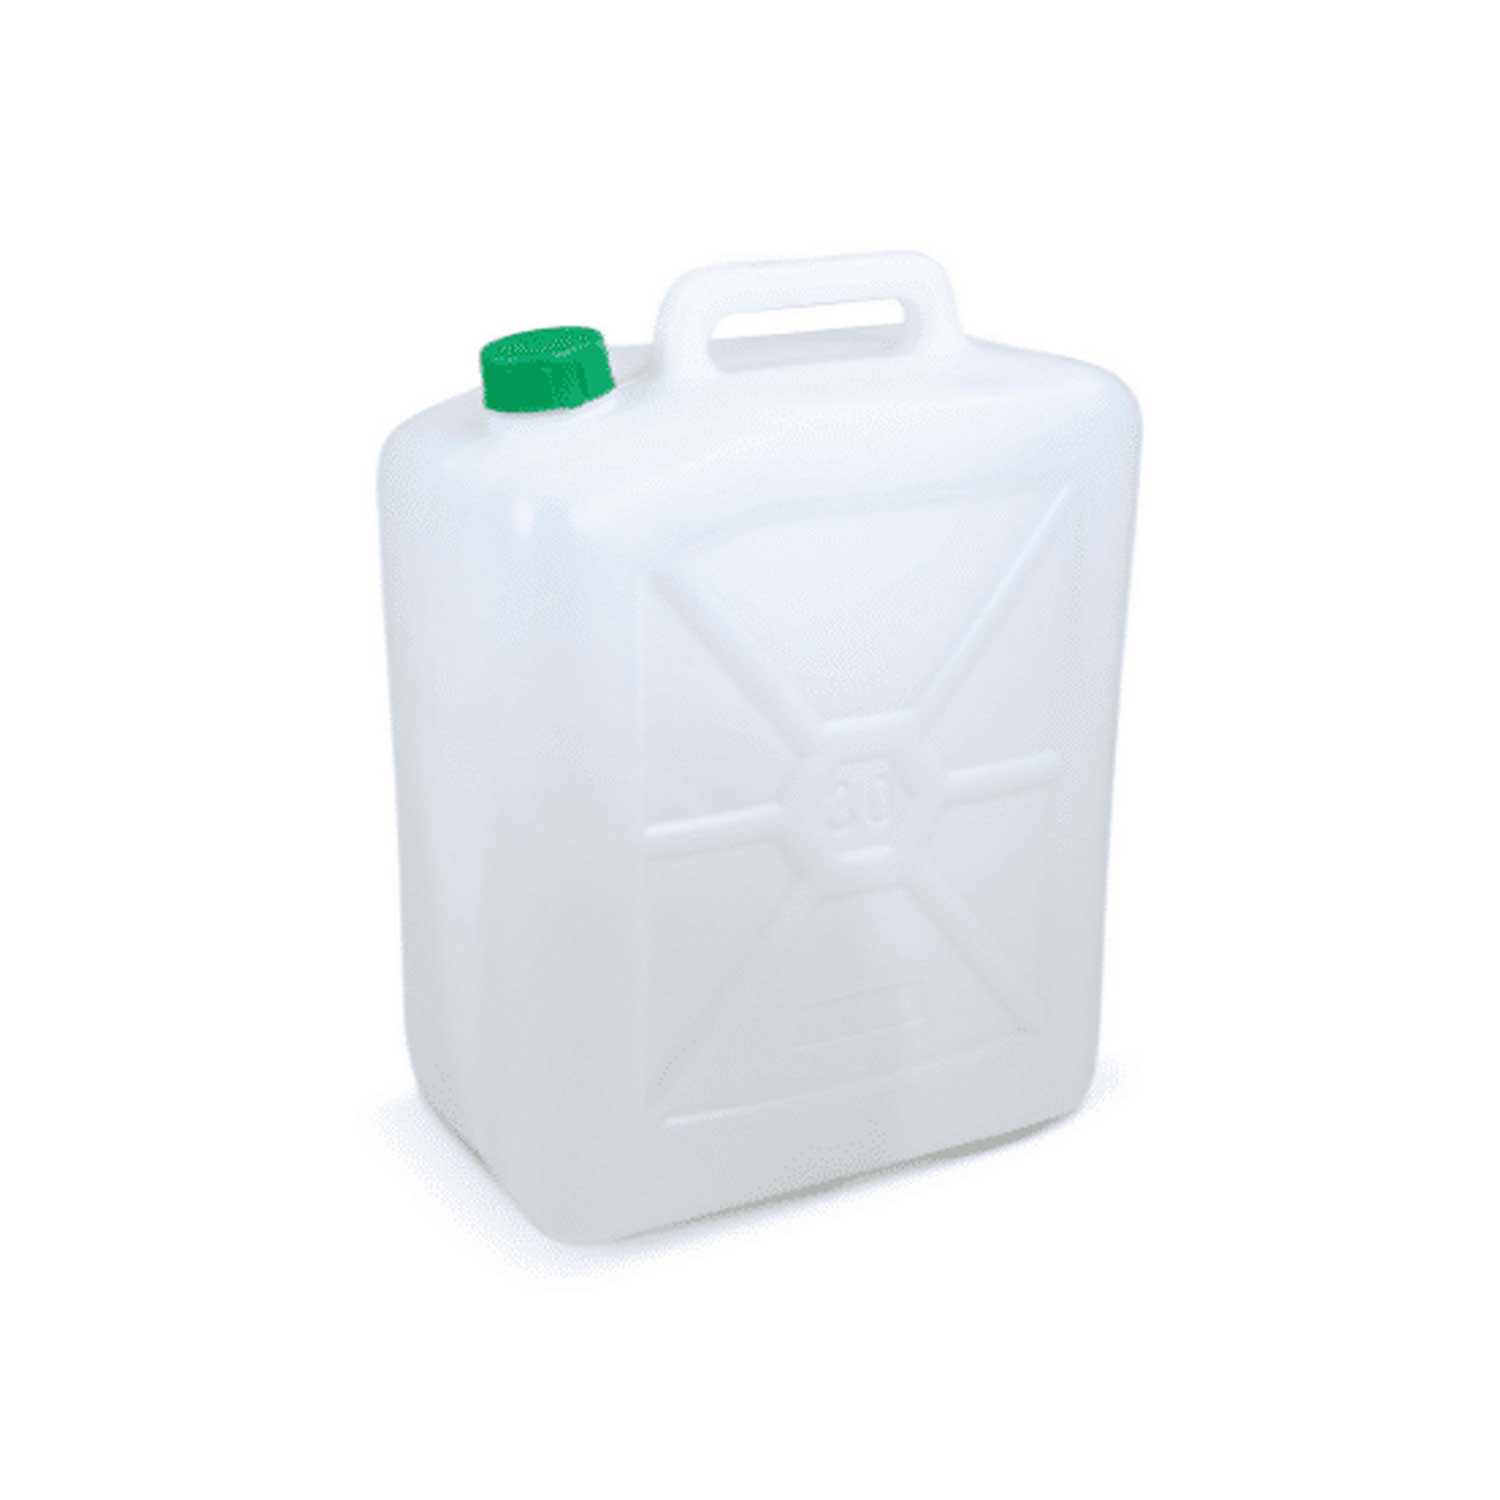 Ecoplast | tanica 30 litri, fusto in plastica, colore neutro, made in italy